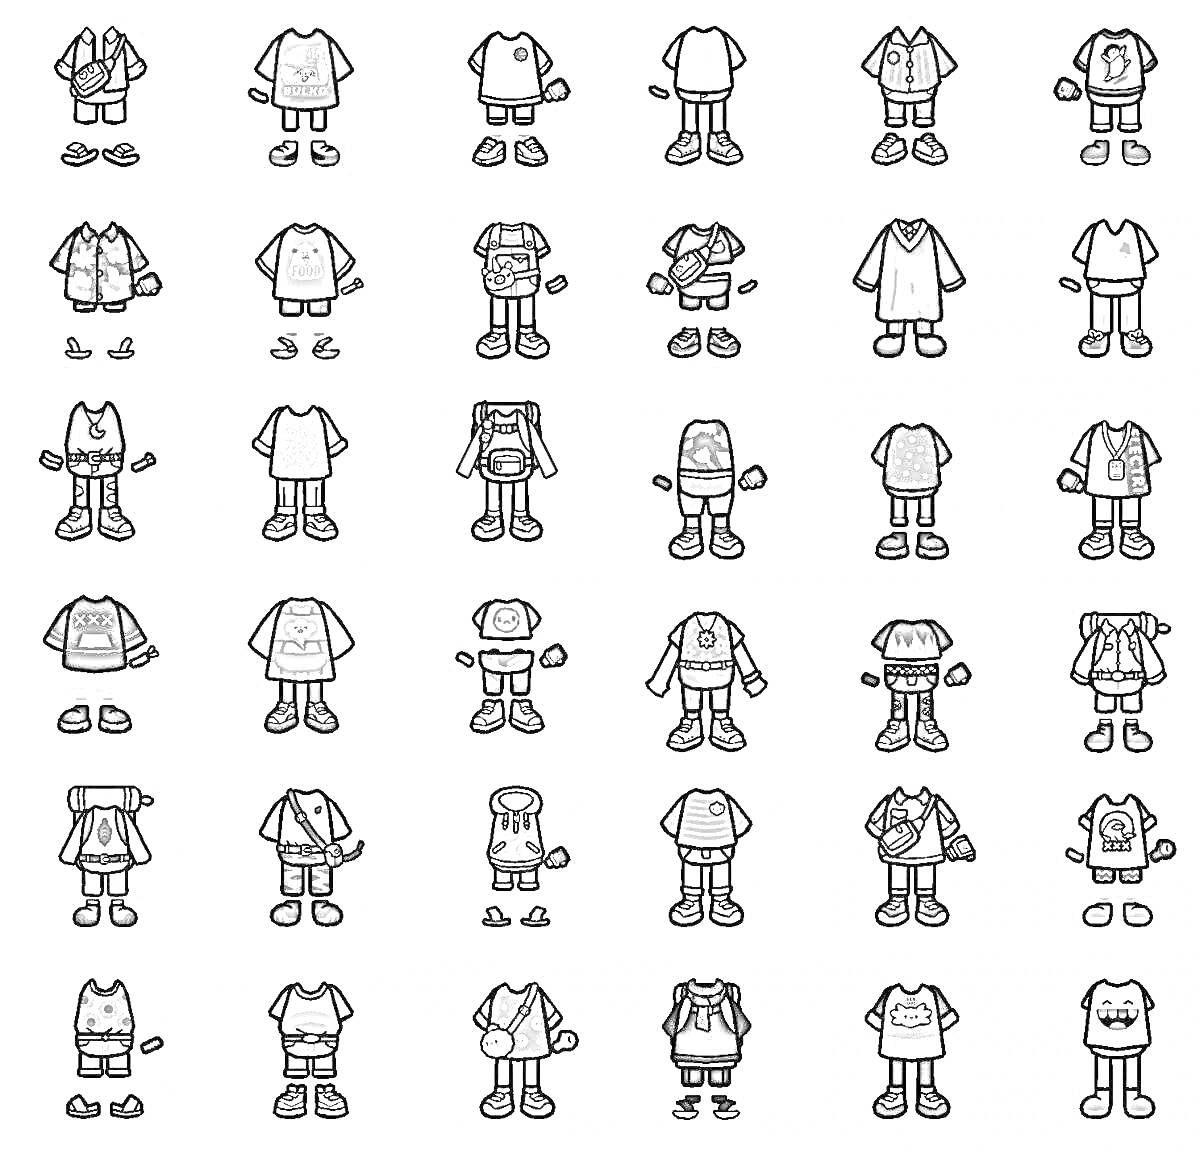 Раскраска Персонажи из Тока Бока без одежки и с одежками (разные костюмы на персонажах)